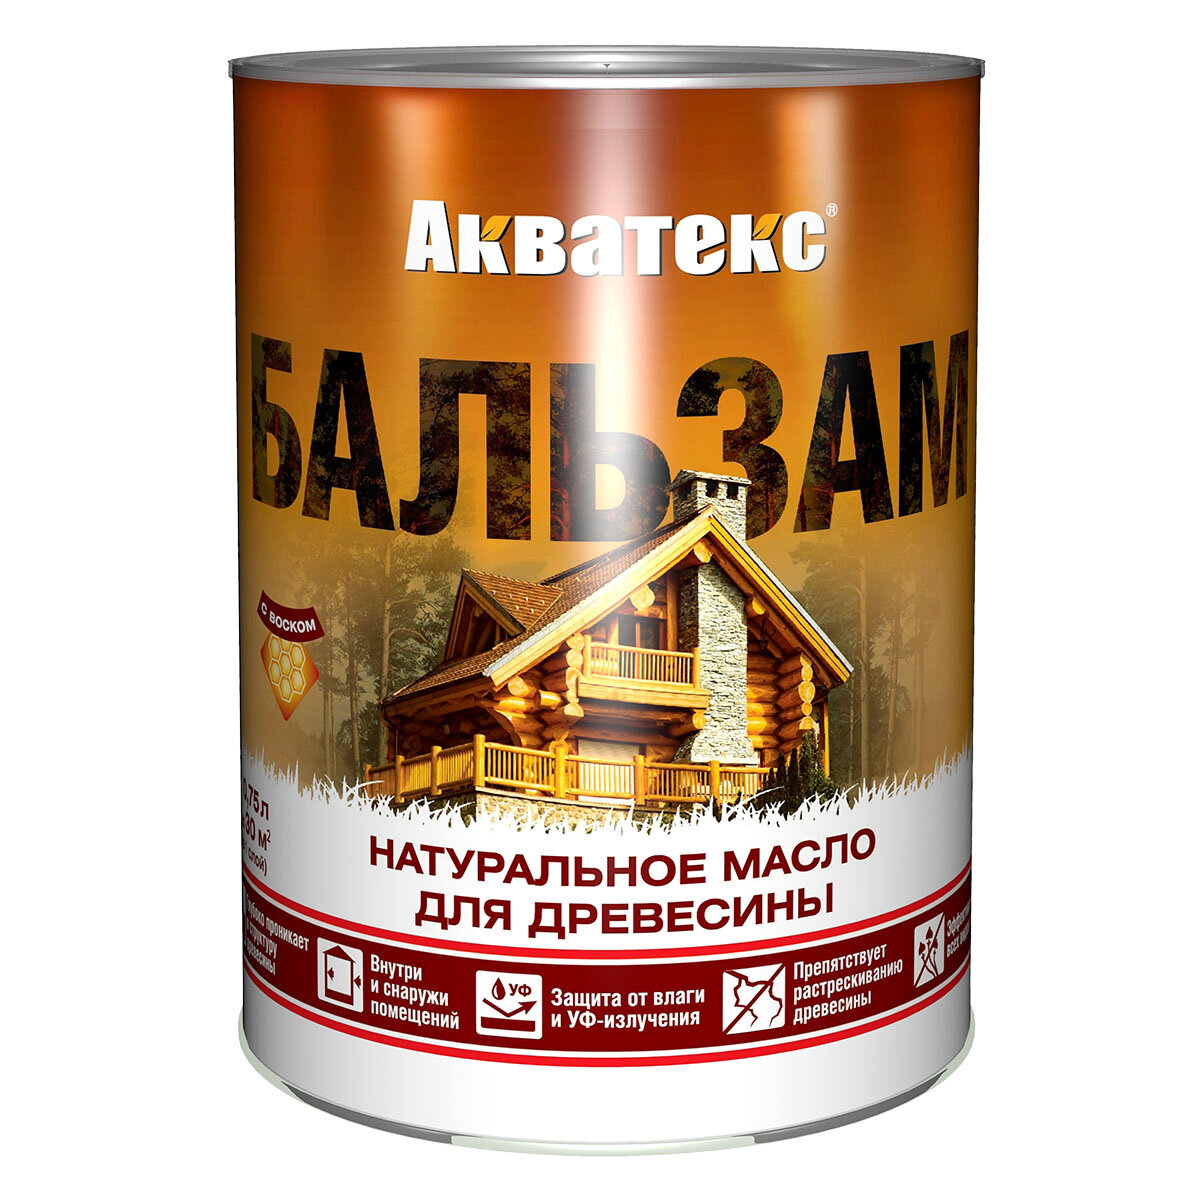 Акватекс - Бальзам масло для древесины 2,2л тик